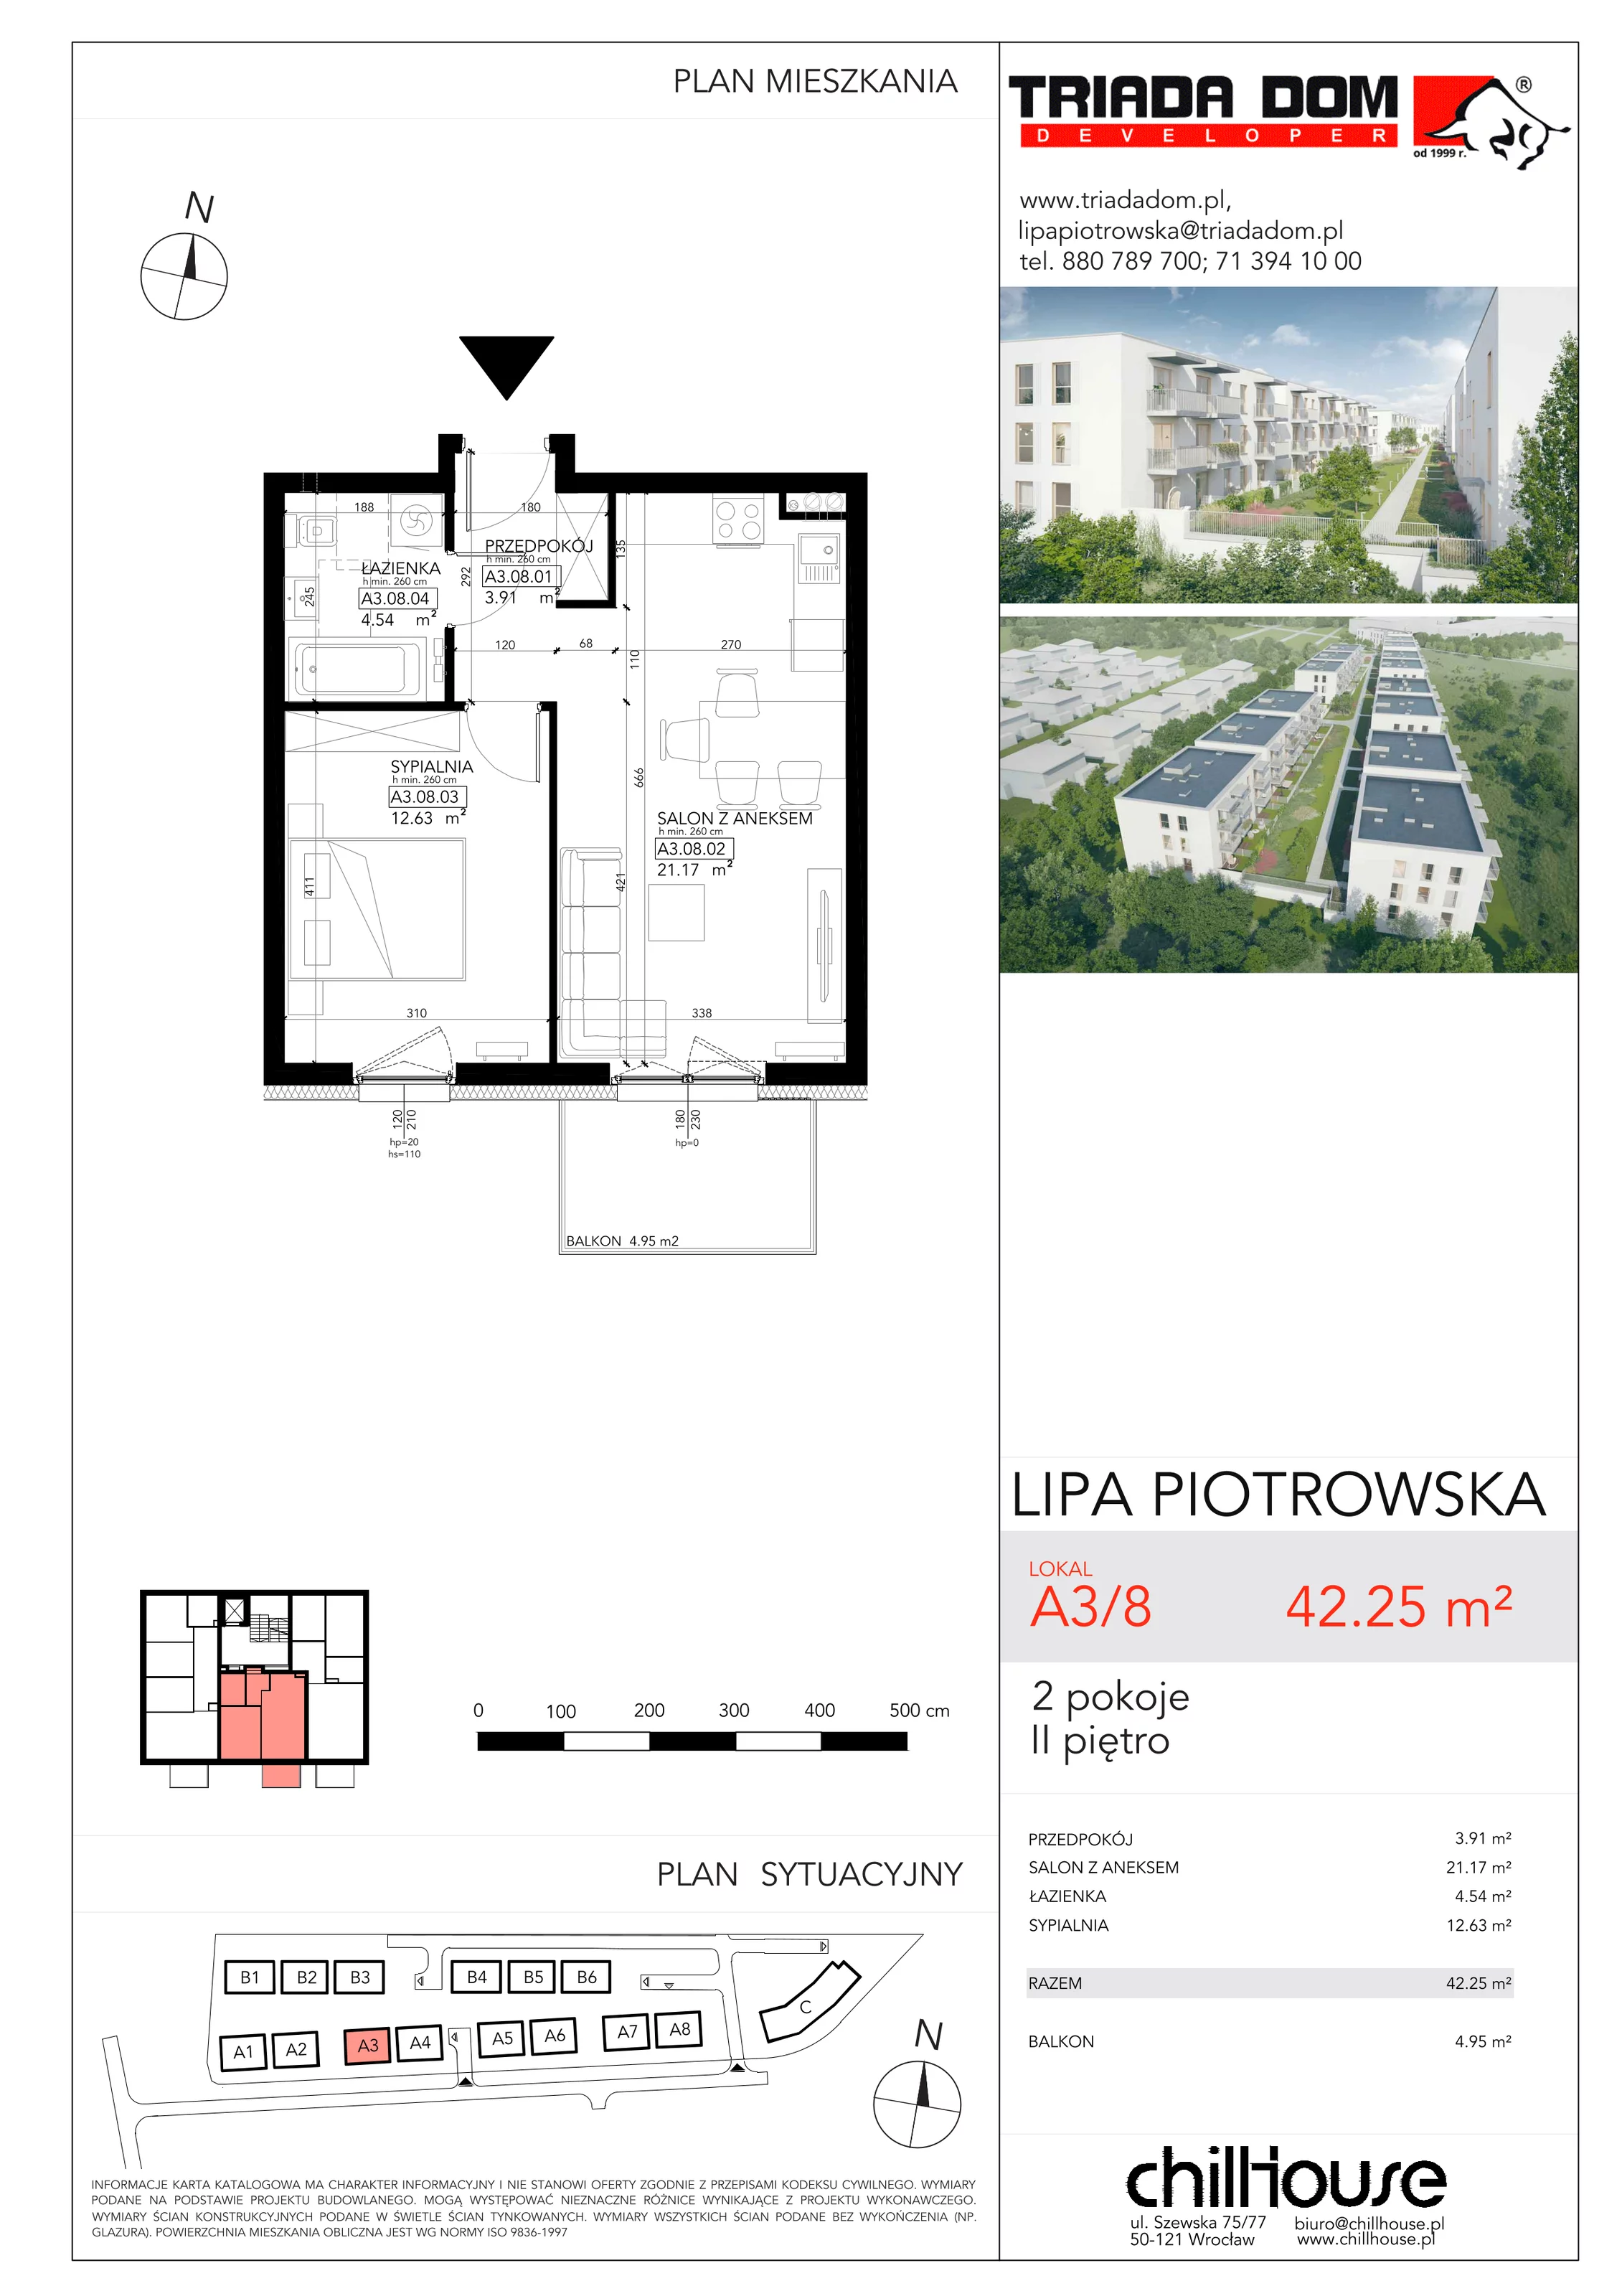 Mieszkanie 42,25 m², piętro 2, oferta nr A38, Lipa Piotrowska, Wrocław, Lipa Piotrowska, ul. Lawendowa / Melisowa